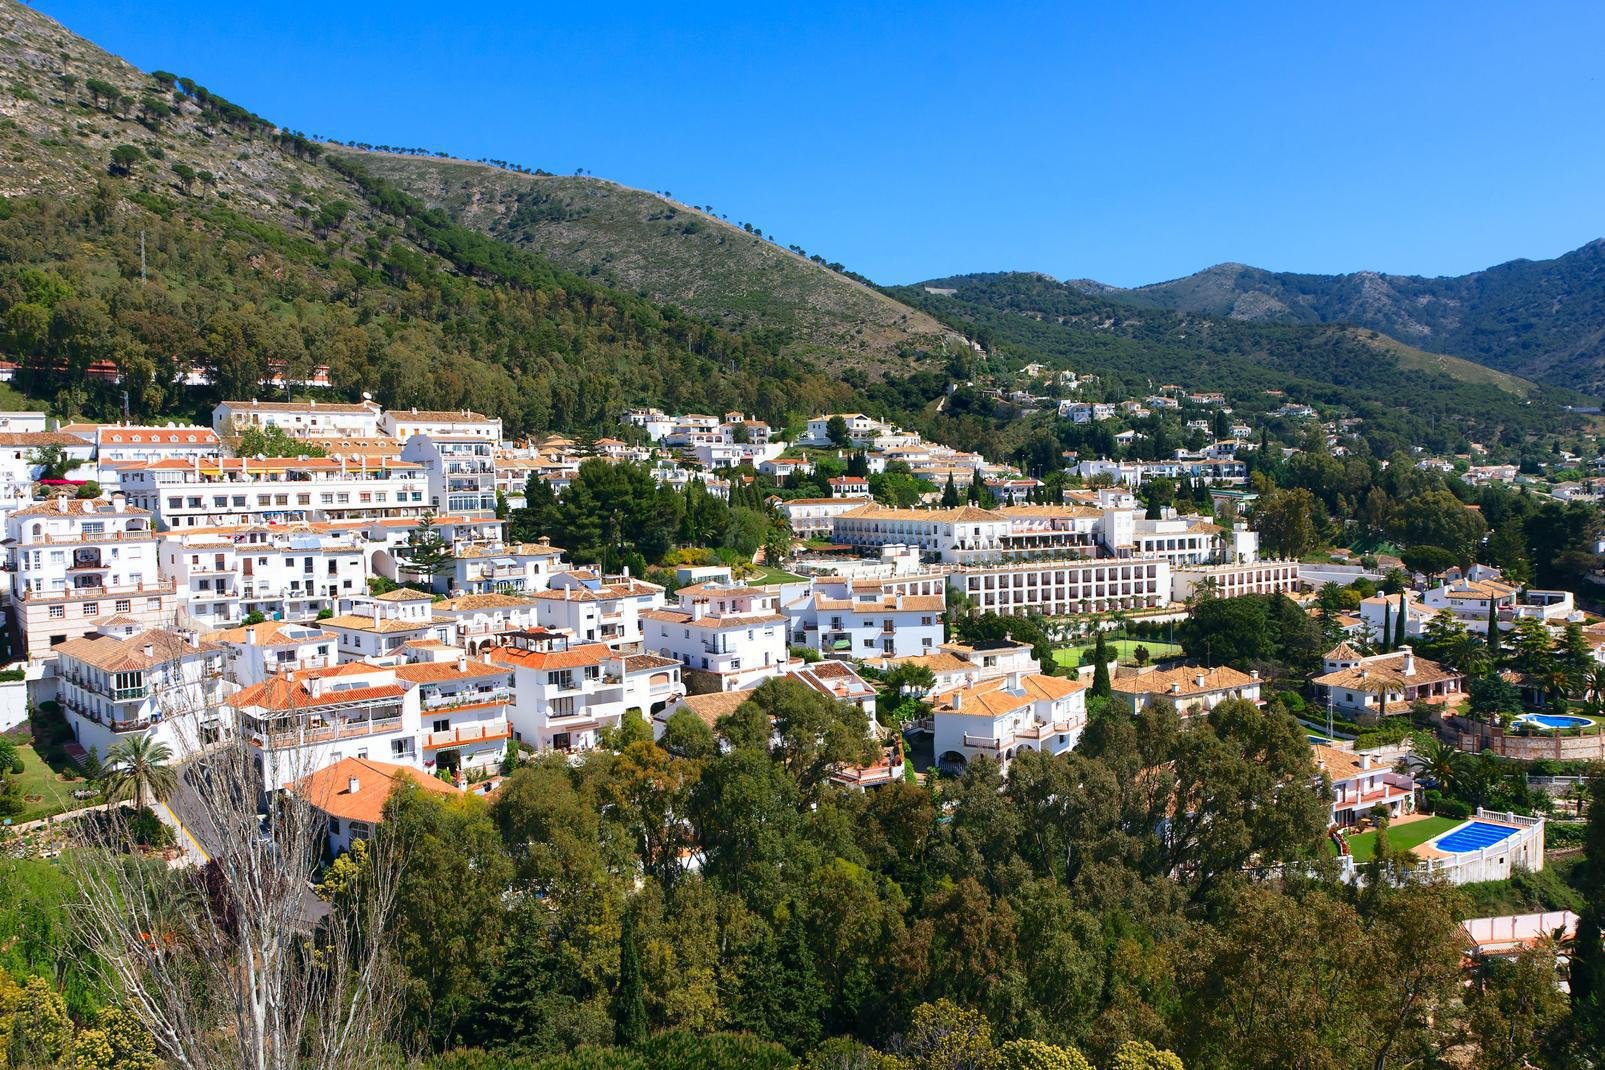 Mijas ist die größte Provinz von Malaga in Andalusien und einer der touristischsten Bereiche der Costa del Sol. Die Provinz umfaßt drei Ortschaften: das weiße Dorf Mijas auf den Anhöhen im Binnenland, Las Lagunas und La Cala an der Mittelmeerküste. Die Altstadt von Mijas befindet sich auf 428 Höhenmeter und ist einer jener berühmten andalusischen Pueblos, die sich durch malerische weißgekalkte Häuser ...